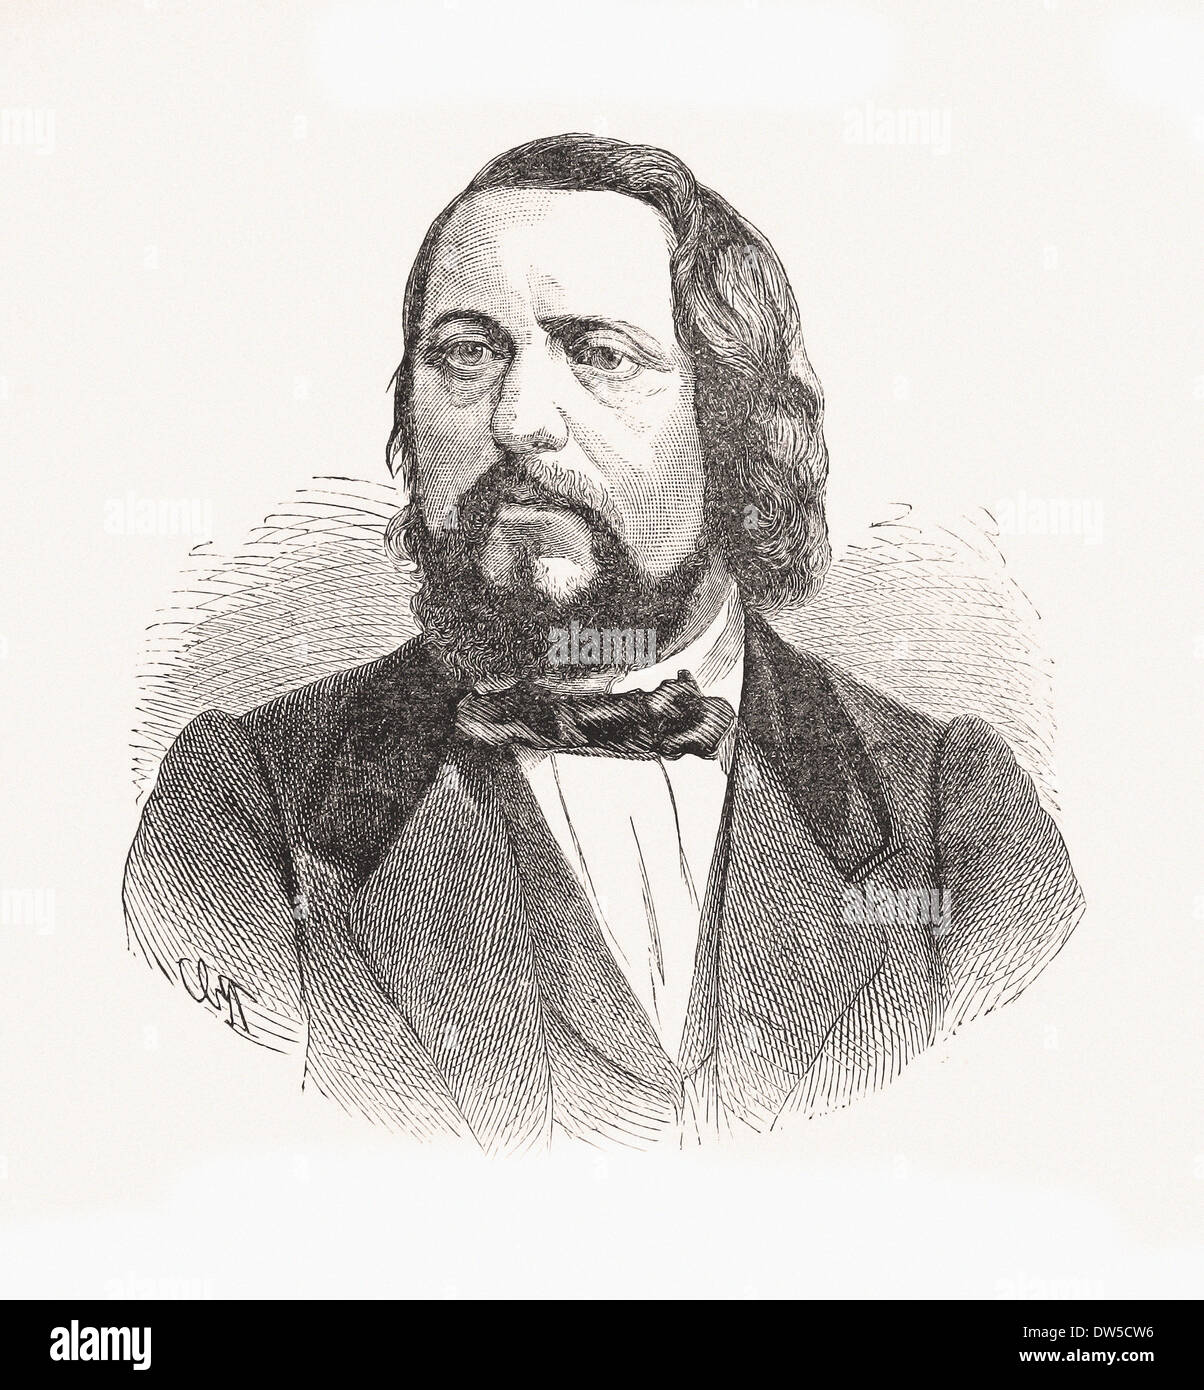 Portrait de Carl Wilhelm - Gravure XIX ème siècle Banque D'Images